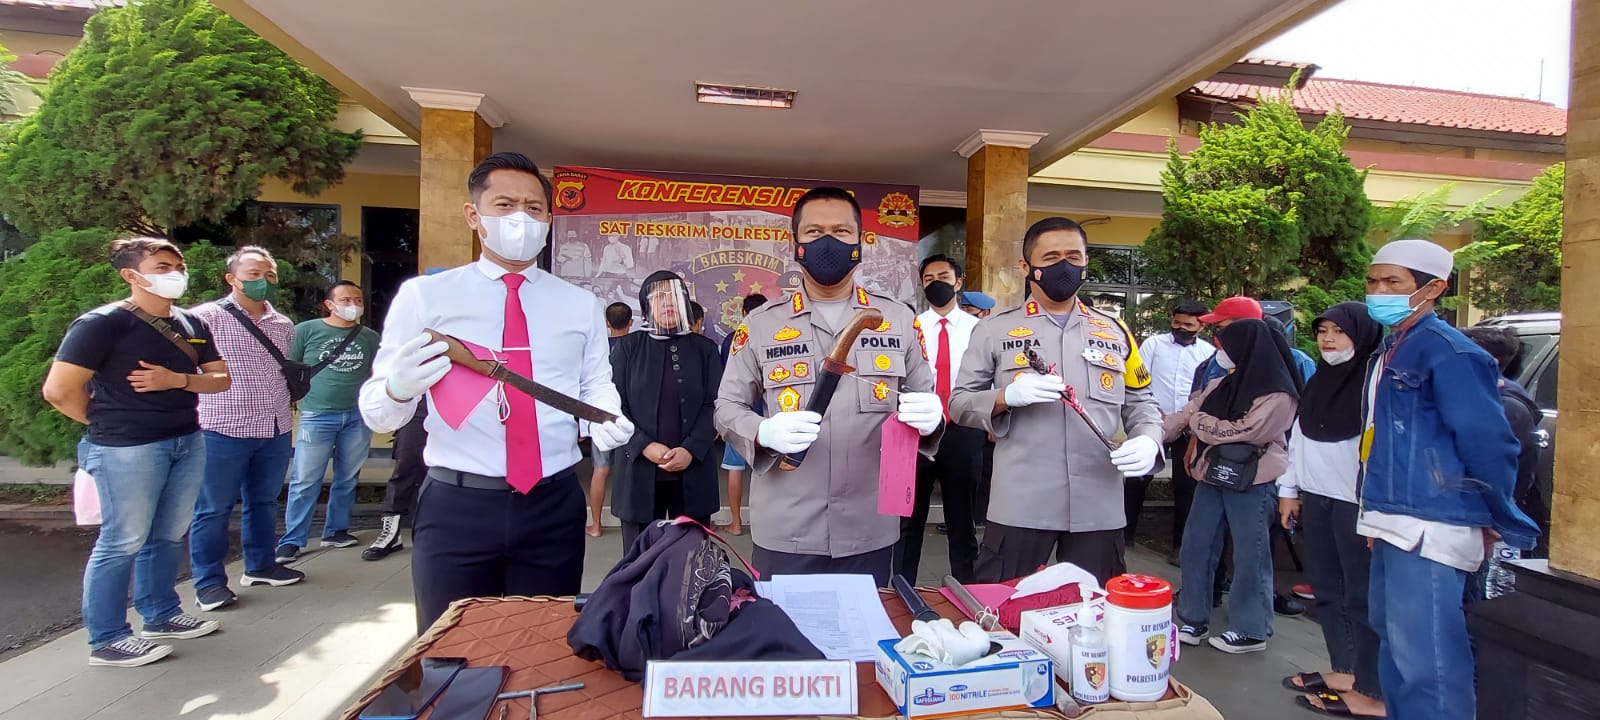 Kapolresta Bandung, Kombes Pol Hendra Kurniawan memperlihatkan barang bukti aksi kejahatan pencurian dan kekerasan. (Yully S Yulianty/Jabar Ekspres)